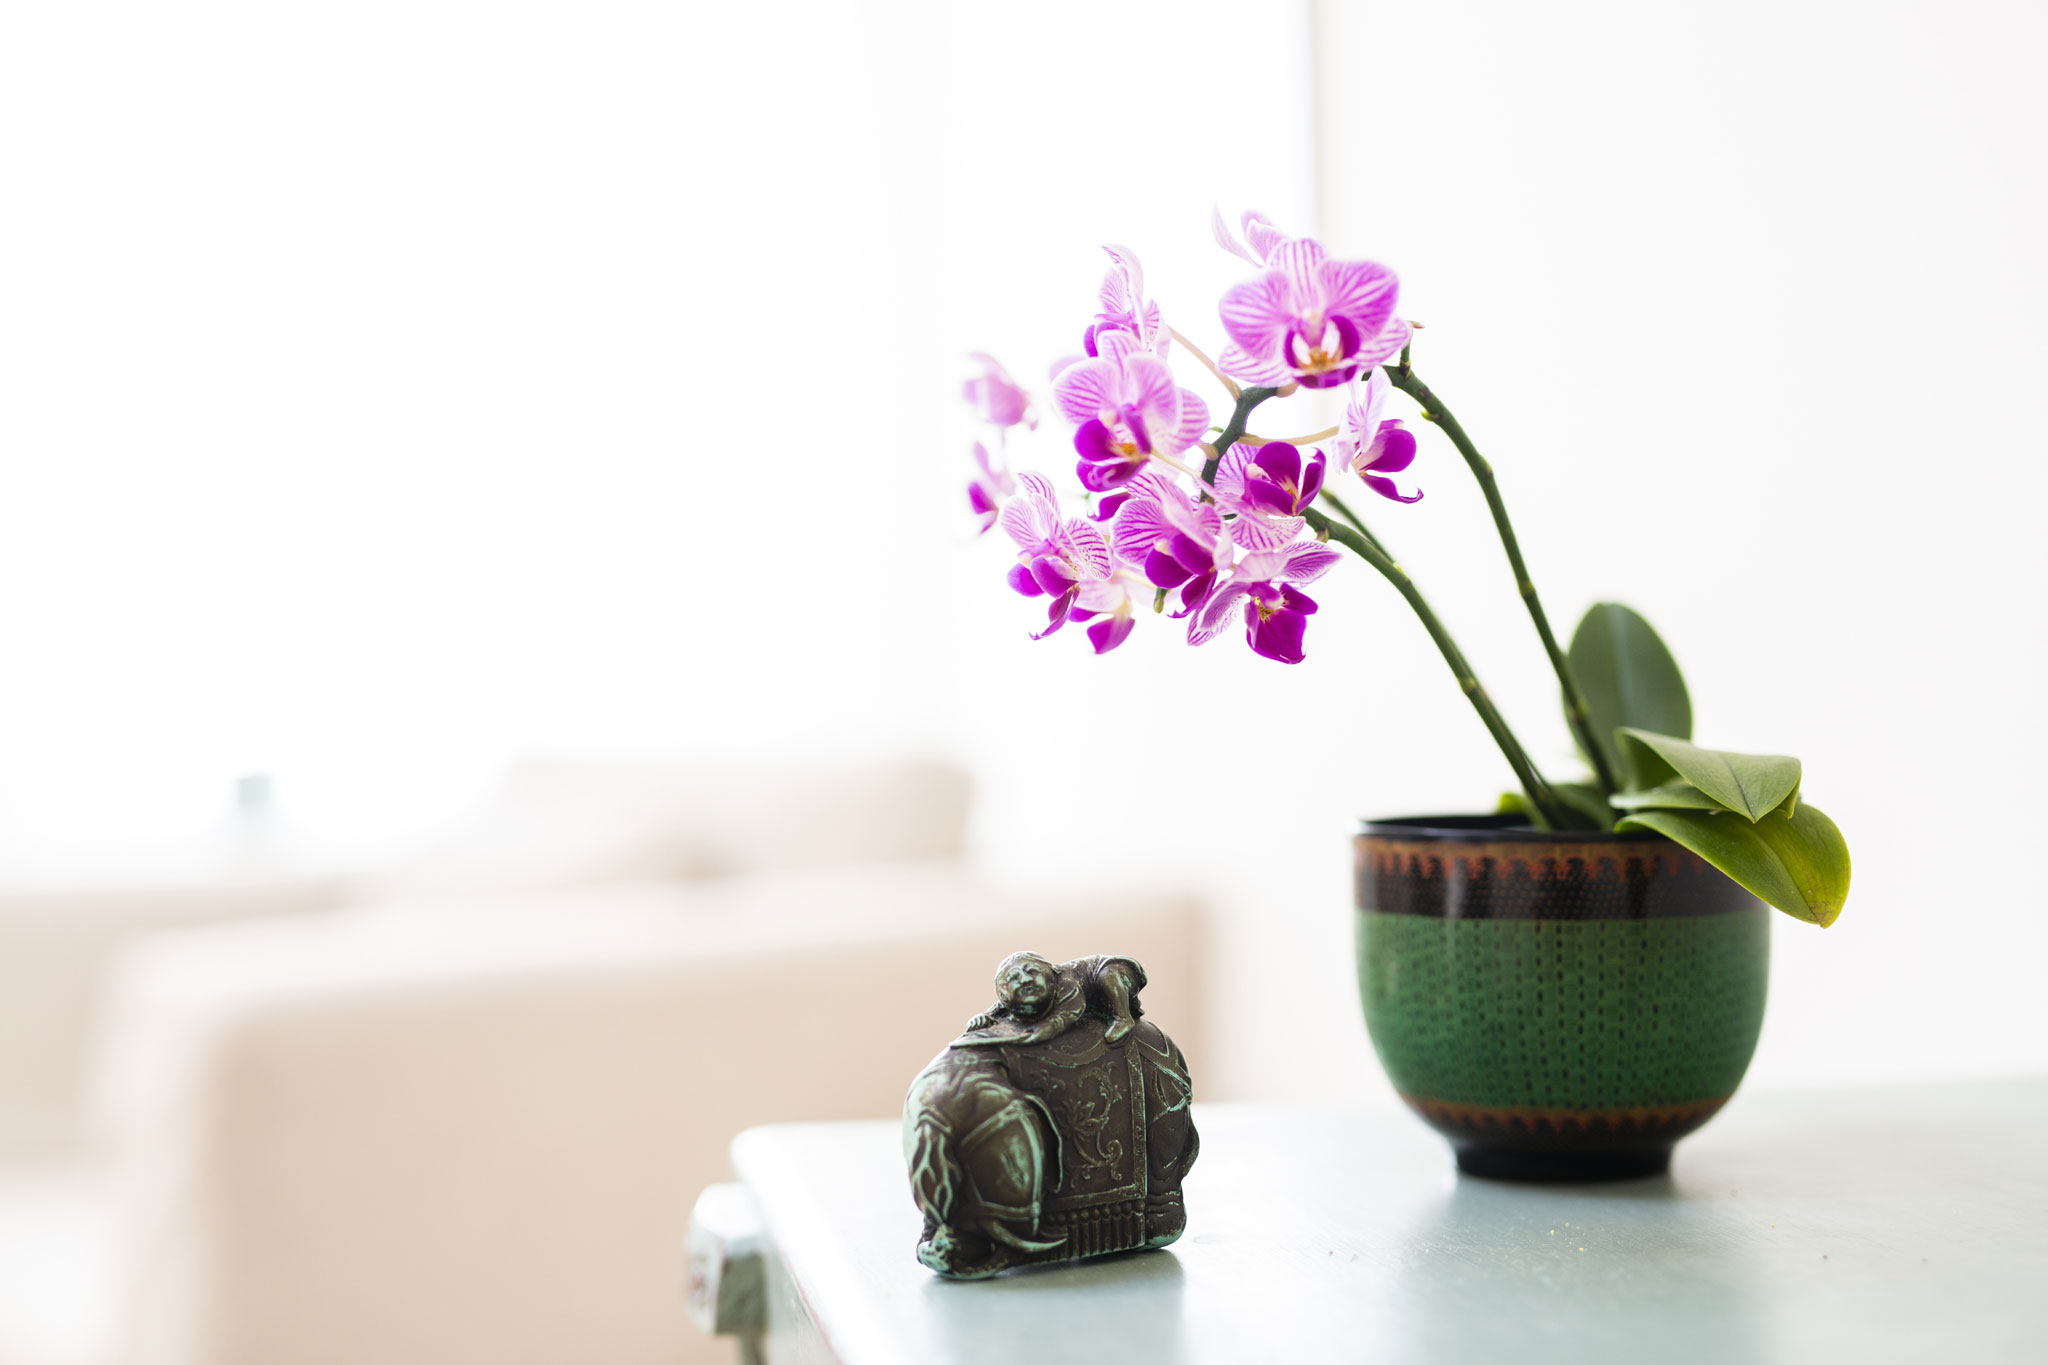 Impressionen aus der Praxis 4: Orchidee auf einer Komode